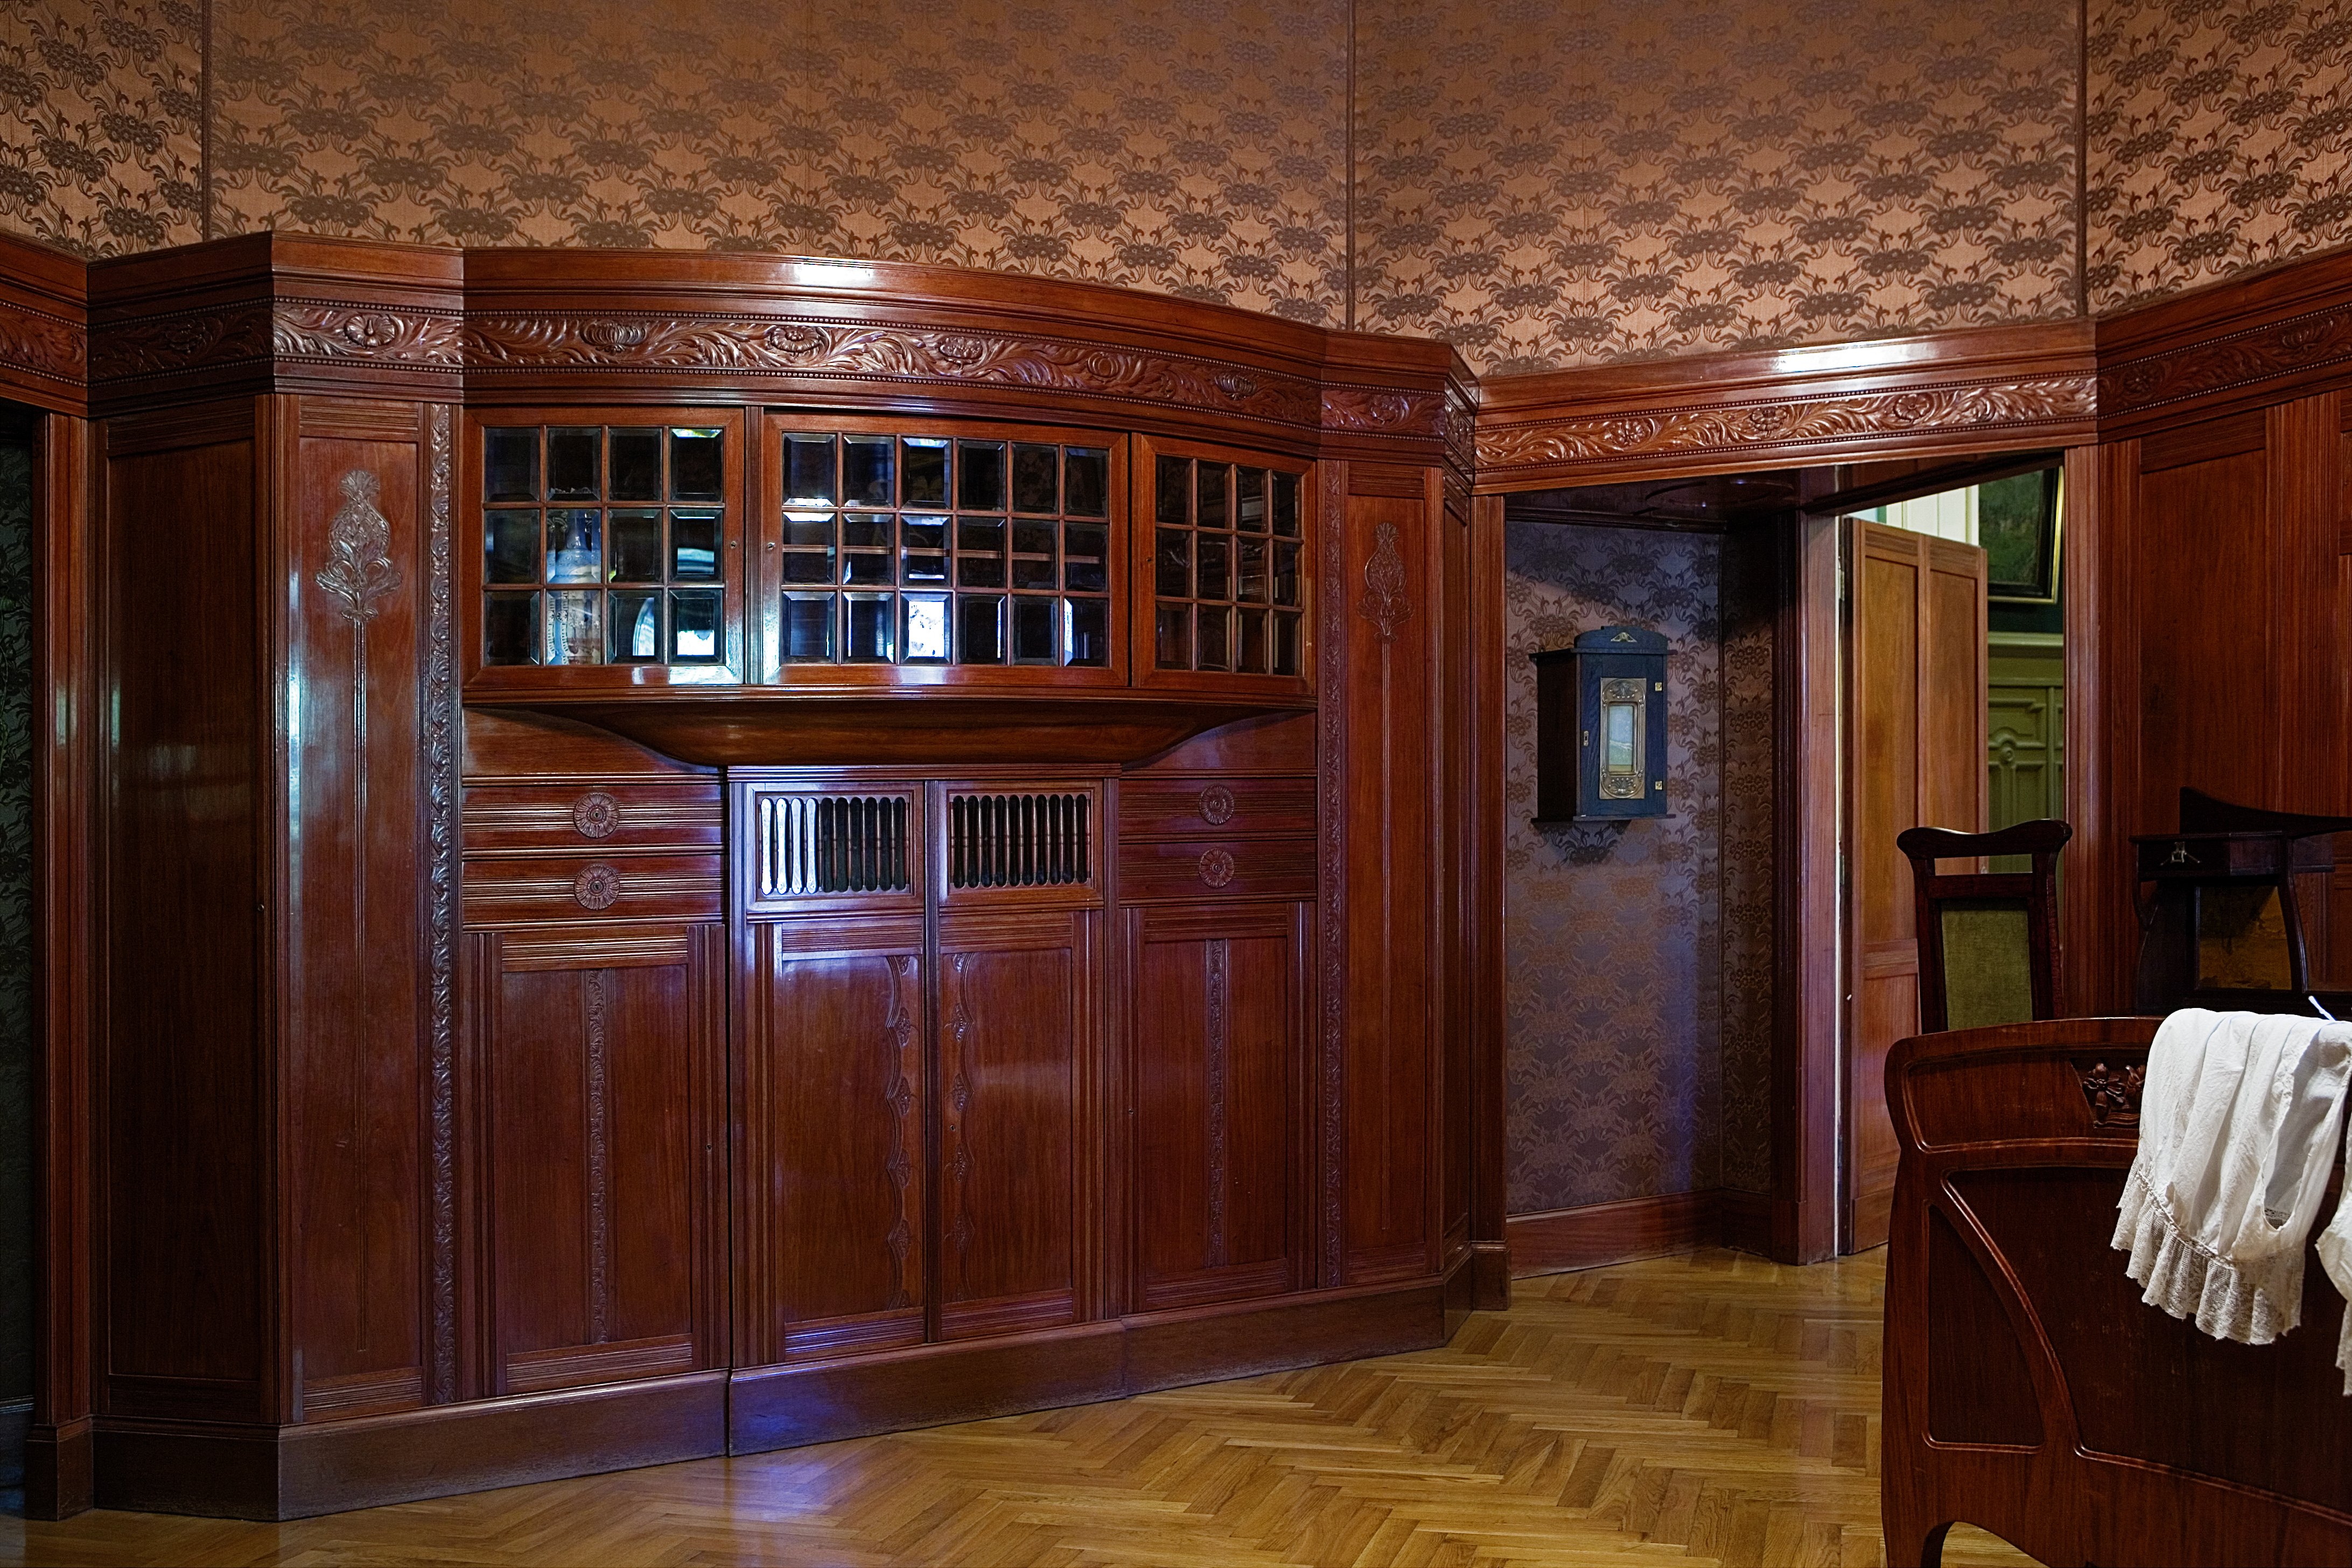 Widok na wyposażenie sypialni pani domu - drewniane, rzeźbione szafy, wbudowane w boazerię w kolorze mahoniowego drewna, przeszklone niewielkimi kryształowymi szybkami.